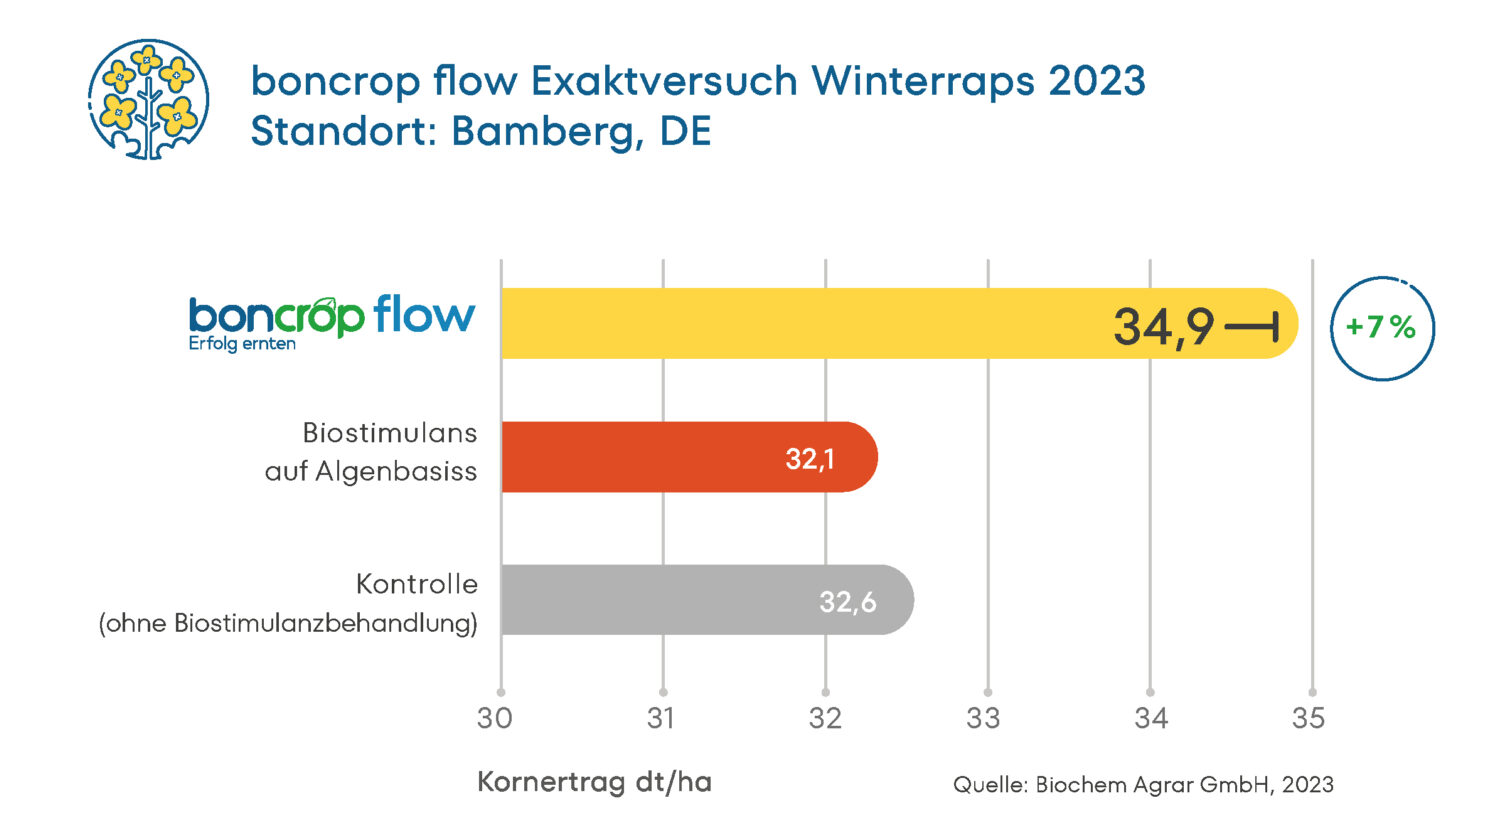 Ergebnis des Exaktversuchs zu boncrop flow in Winterrraps in 2023 am Standort Bamberg